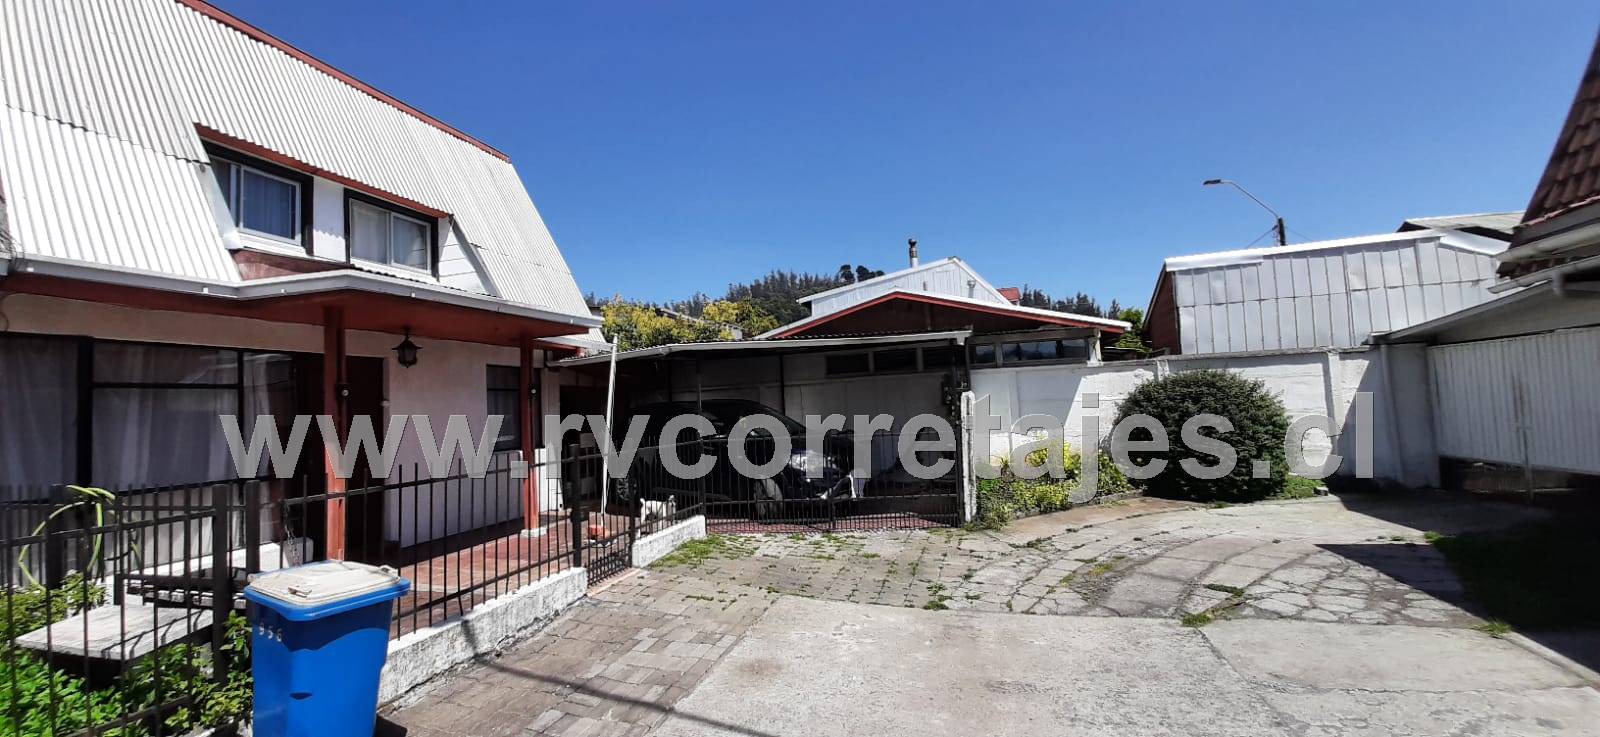 Vendo Casa en Los Lirios Concepción